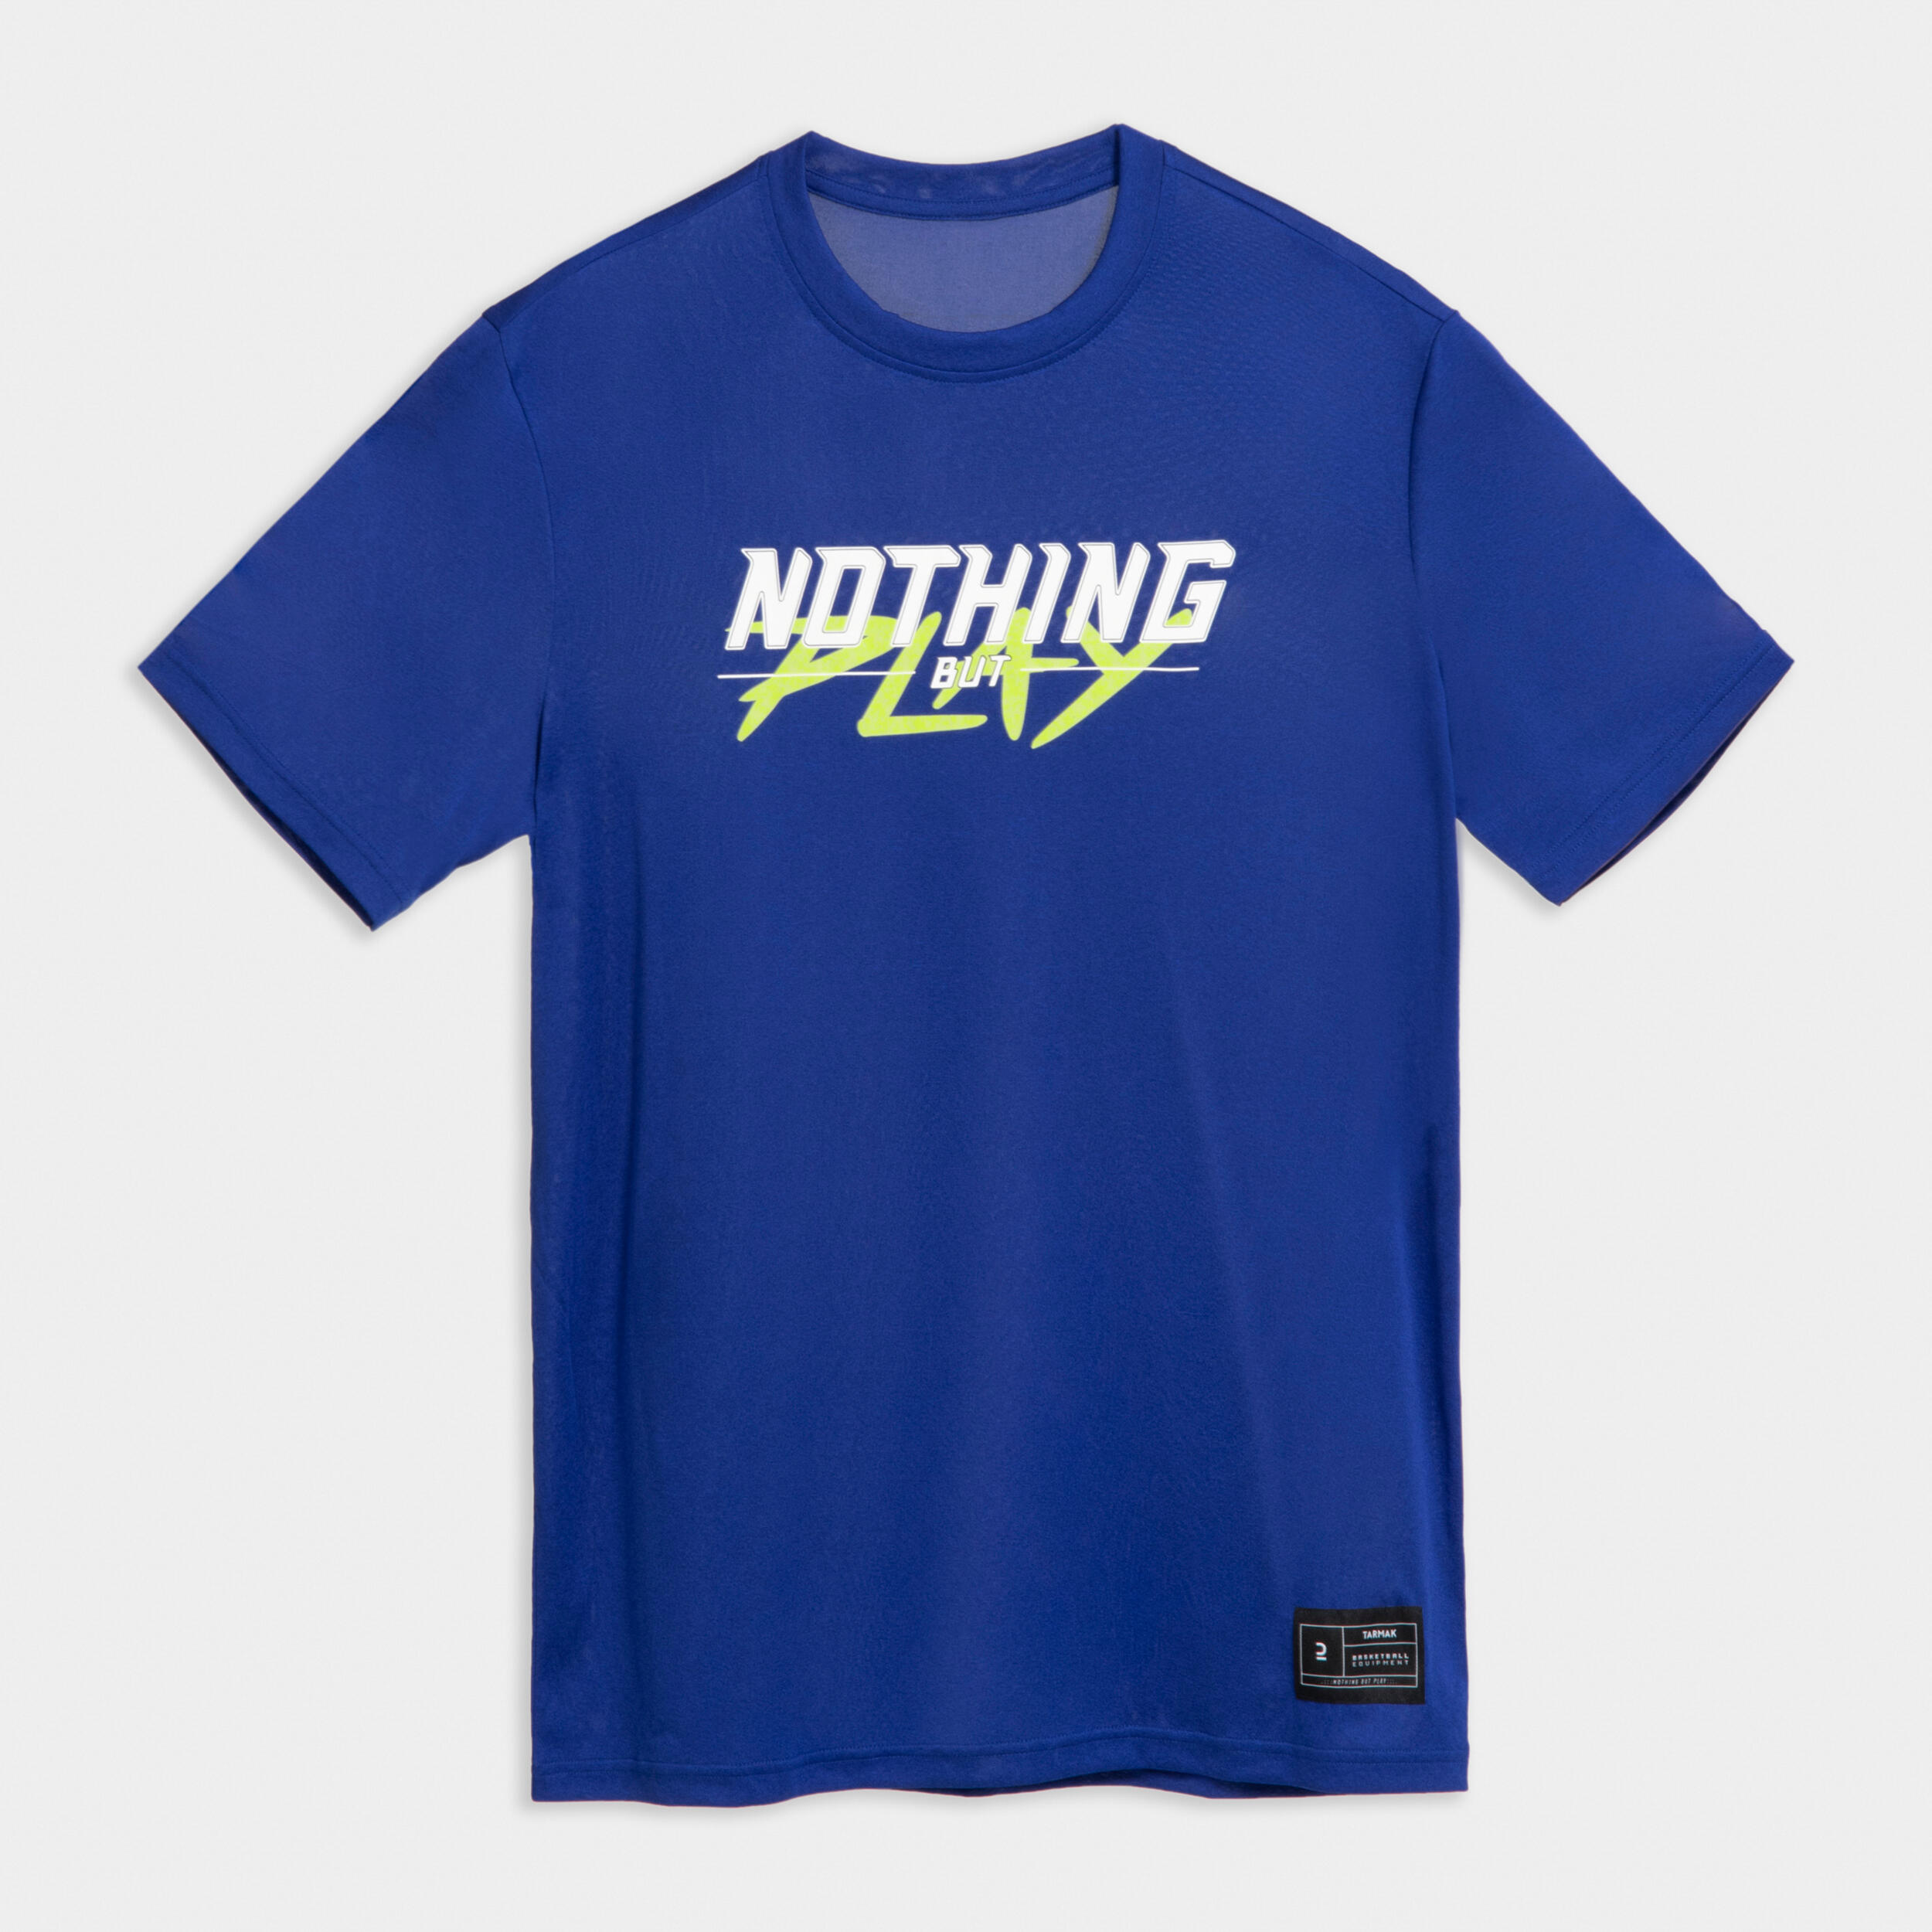 Men's/Women's Basketball T-Shirt/Jersey TS500 Fast - Blue 6/7